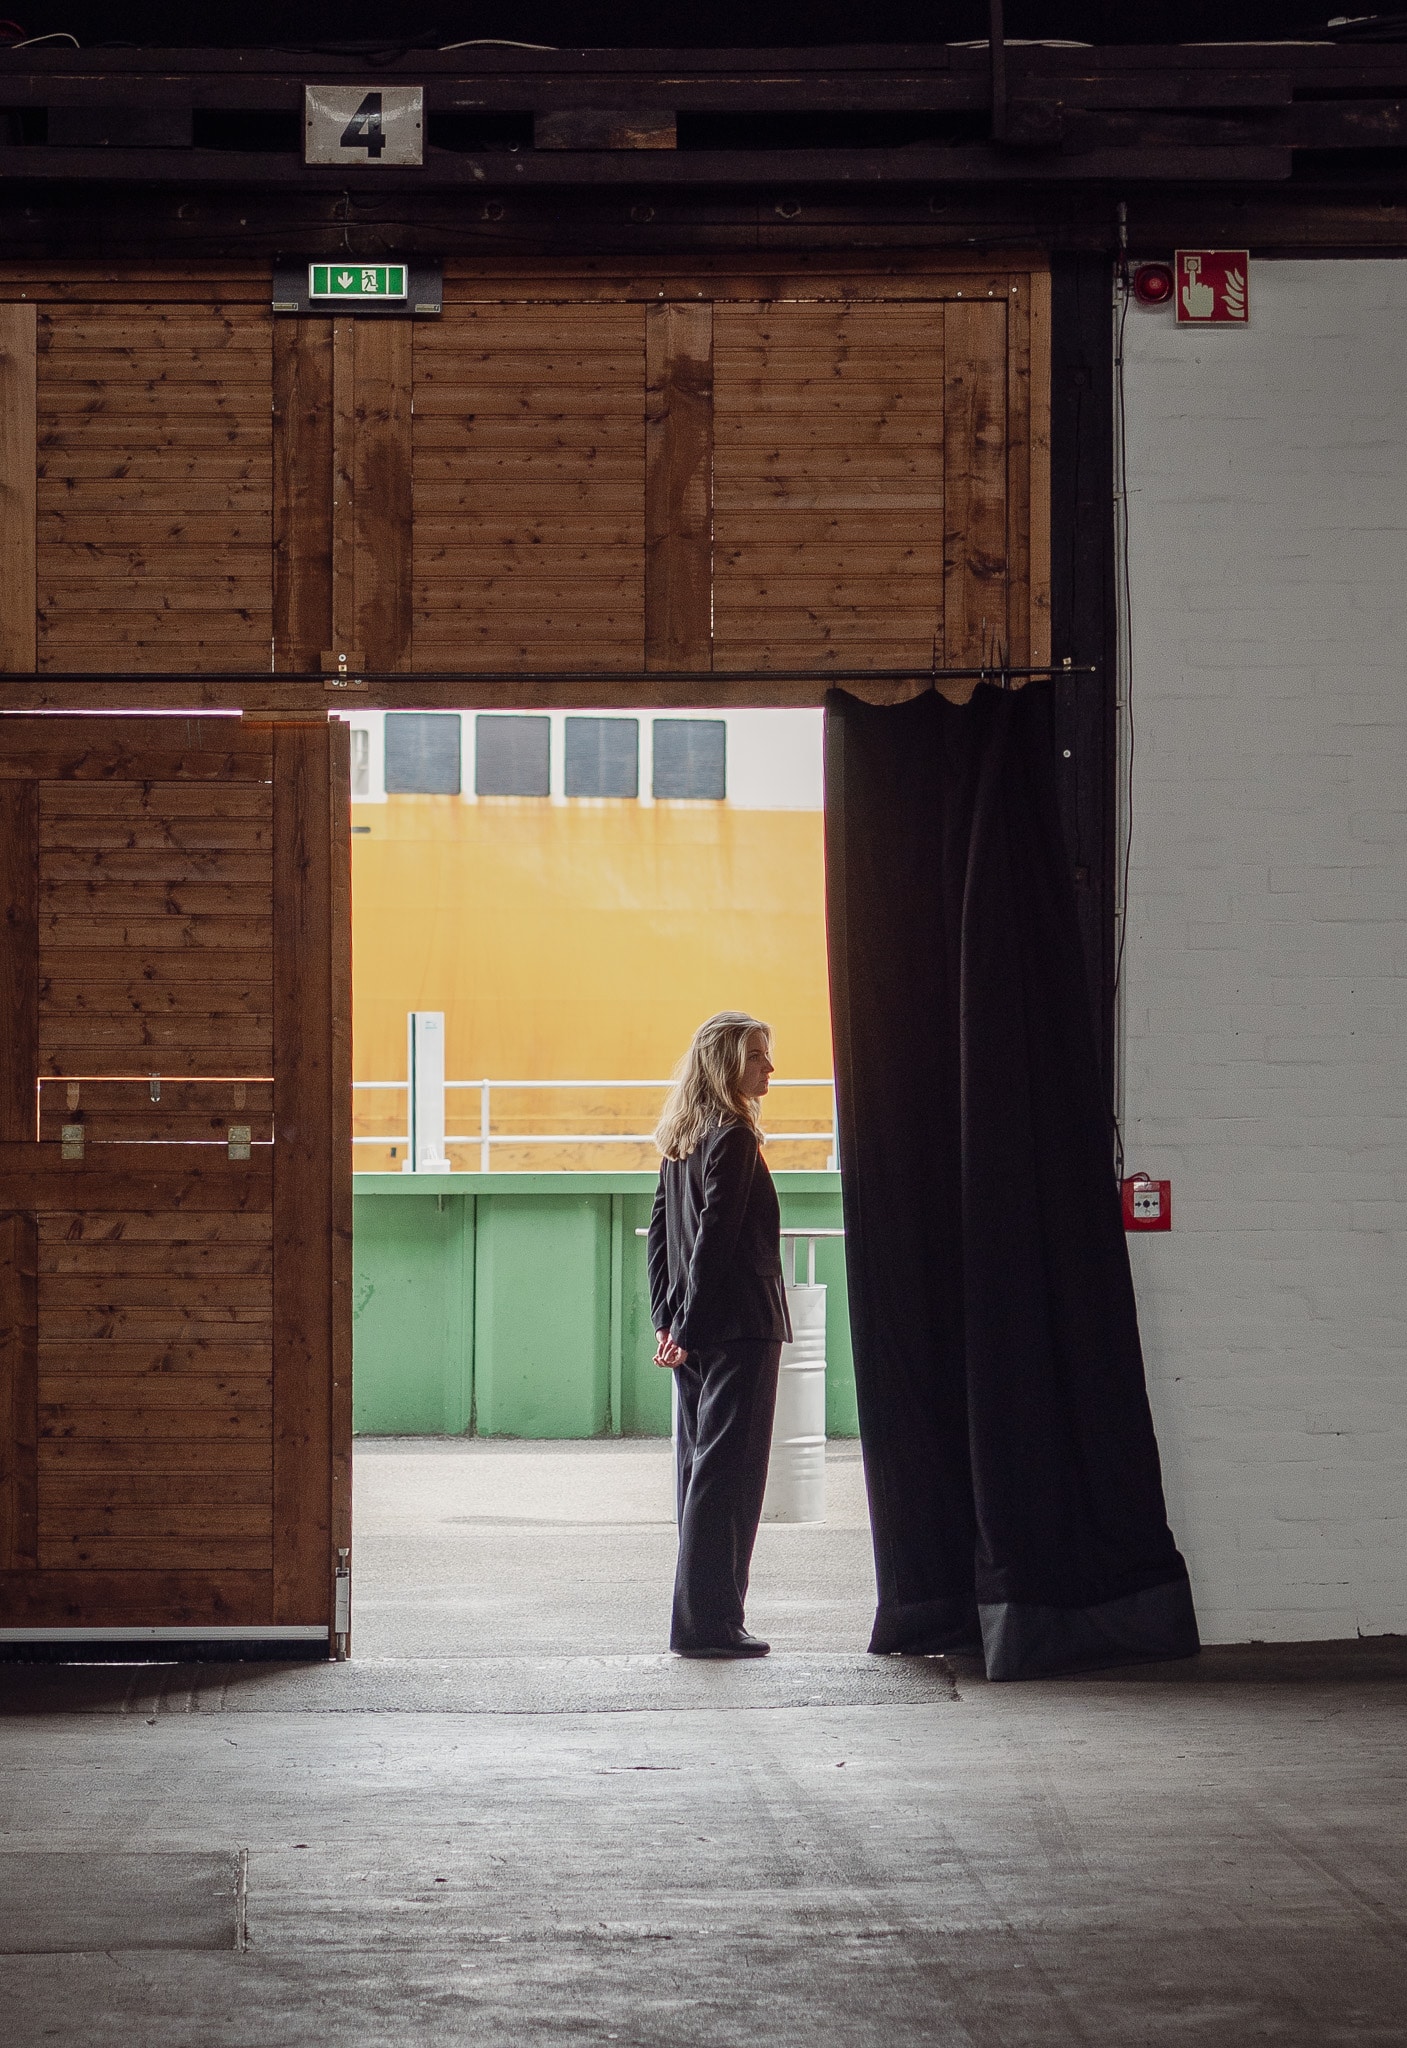 Eine Frau in schwarzer Kleidung steht in einer offenen Tür und blickt nach draußen, wo ein großes gelbes Schiff und ein grüner Container zu sehen sind.